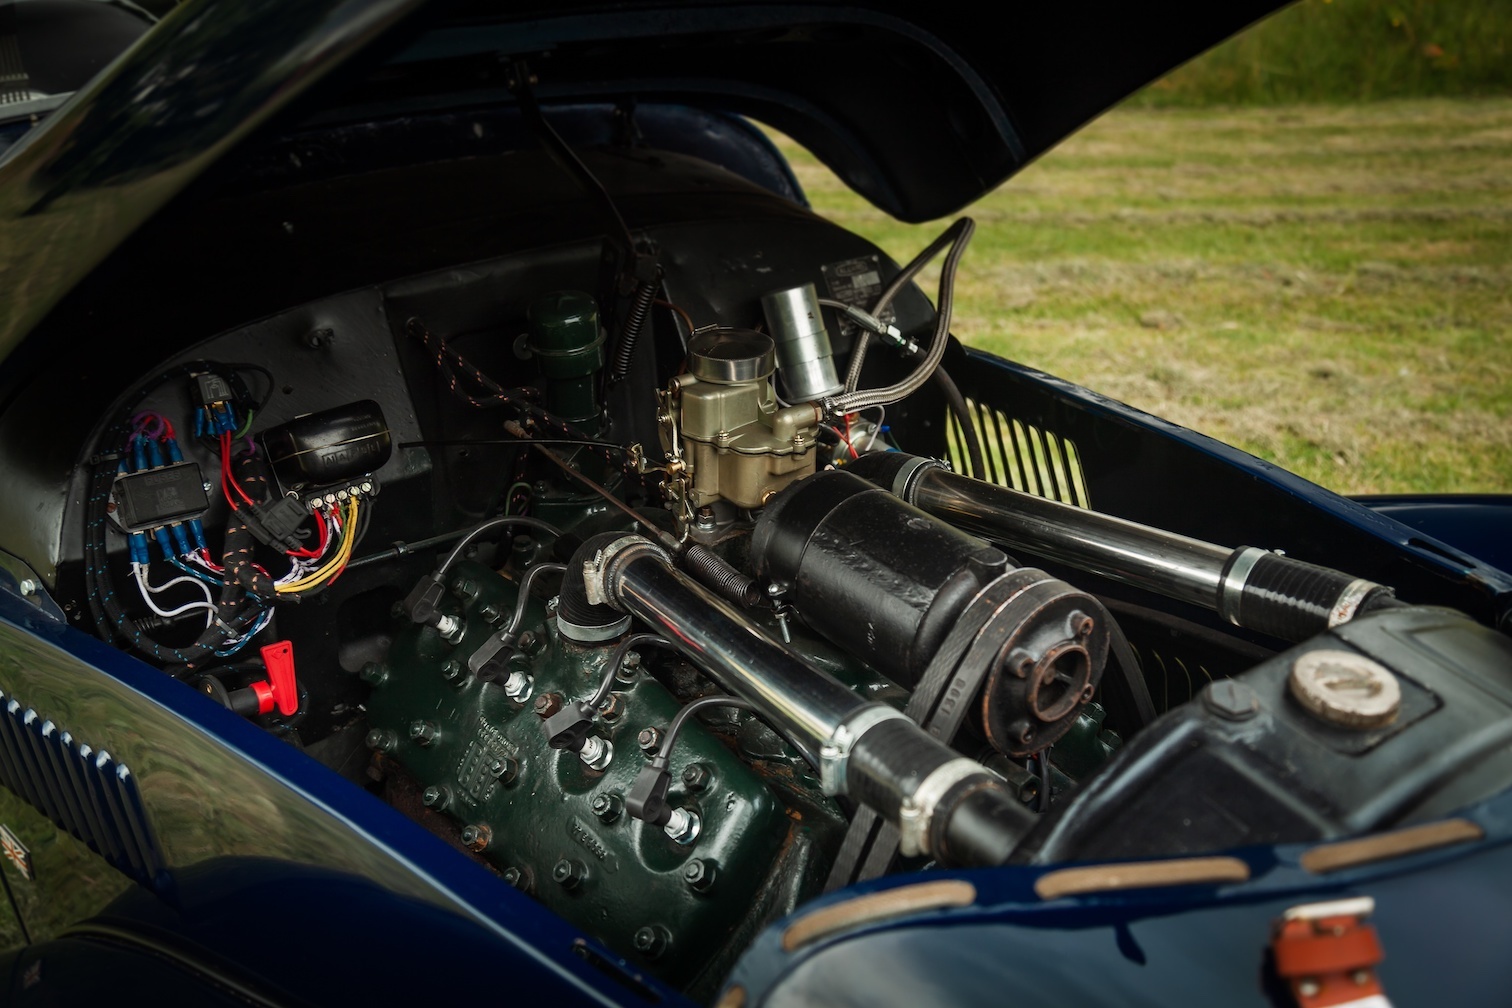 1947 Allard K1 engine